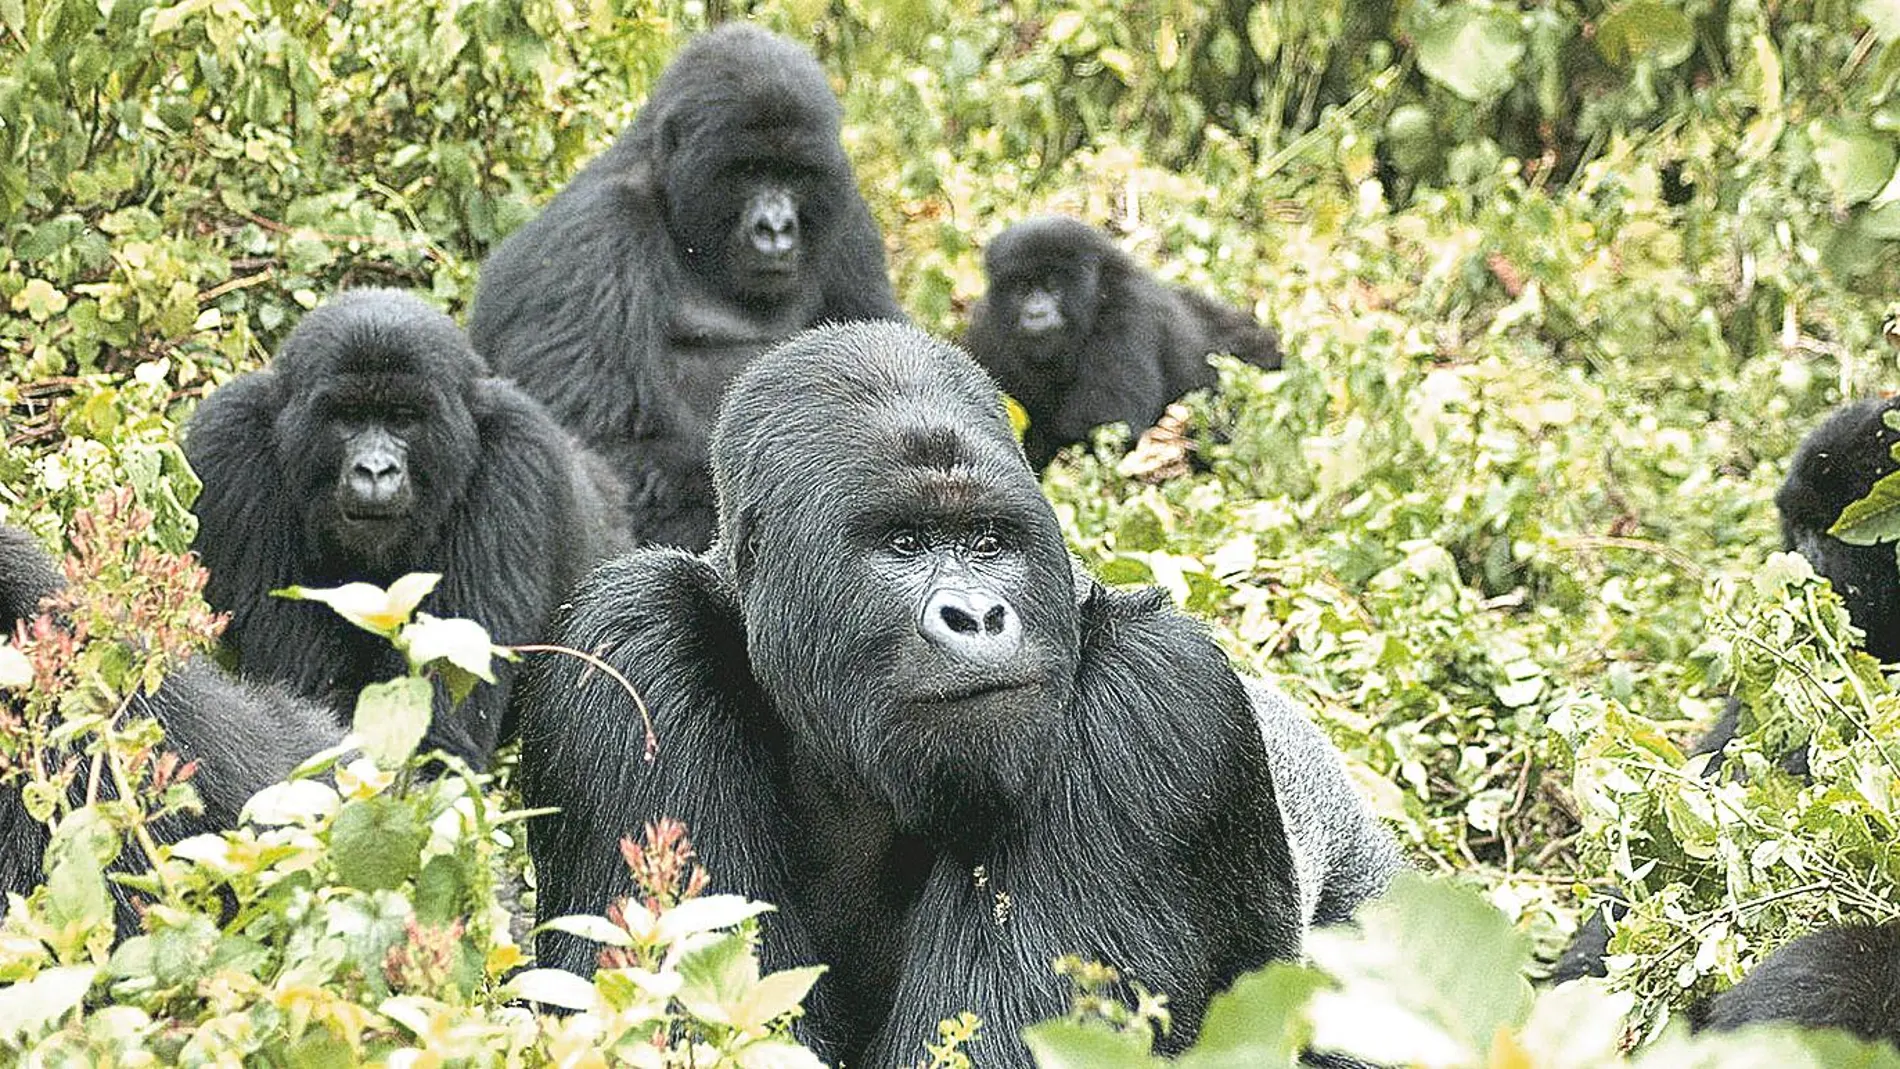 No hay que olvidar que los gorilas son una especie en peligro de extinción